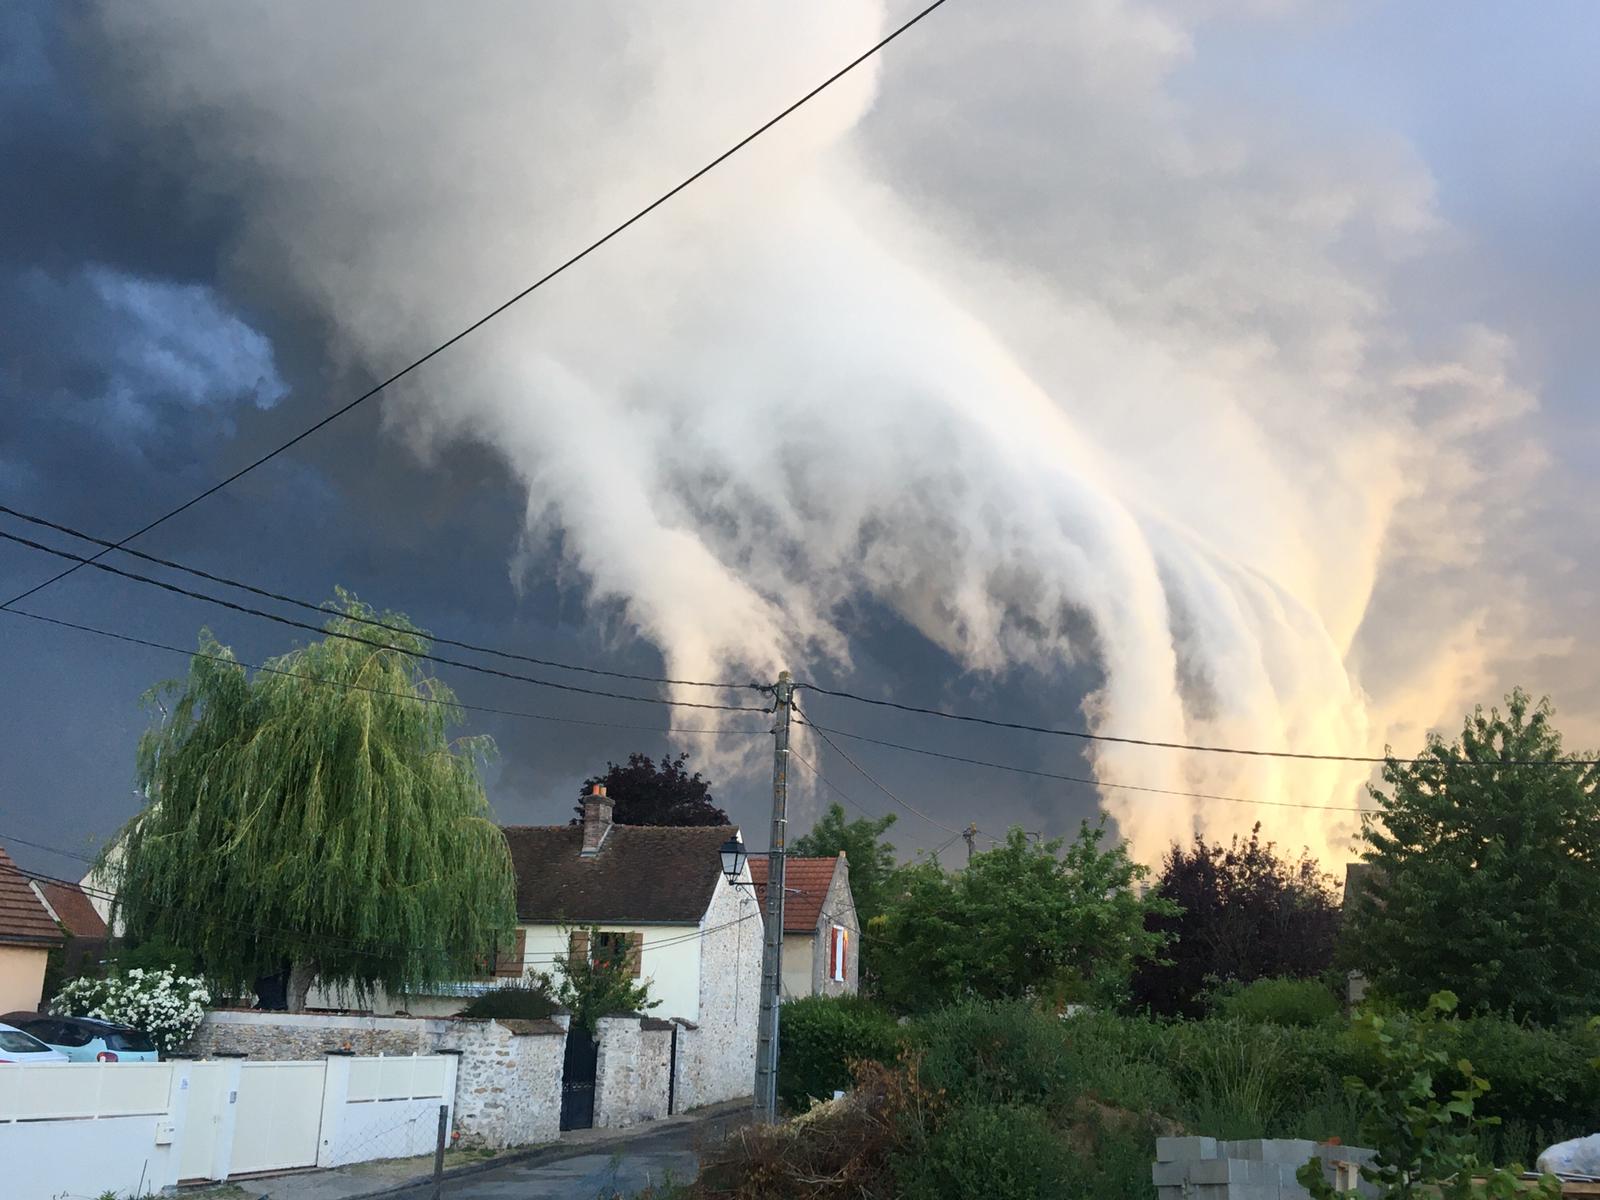 Orage dans les Yvelines village d'Auteuil - 12/06/2020 21:30 - Charlotte Ponce